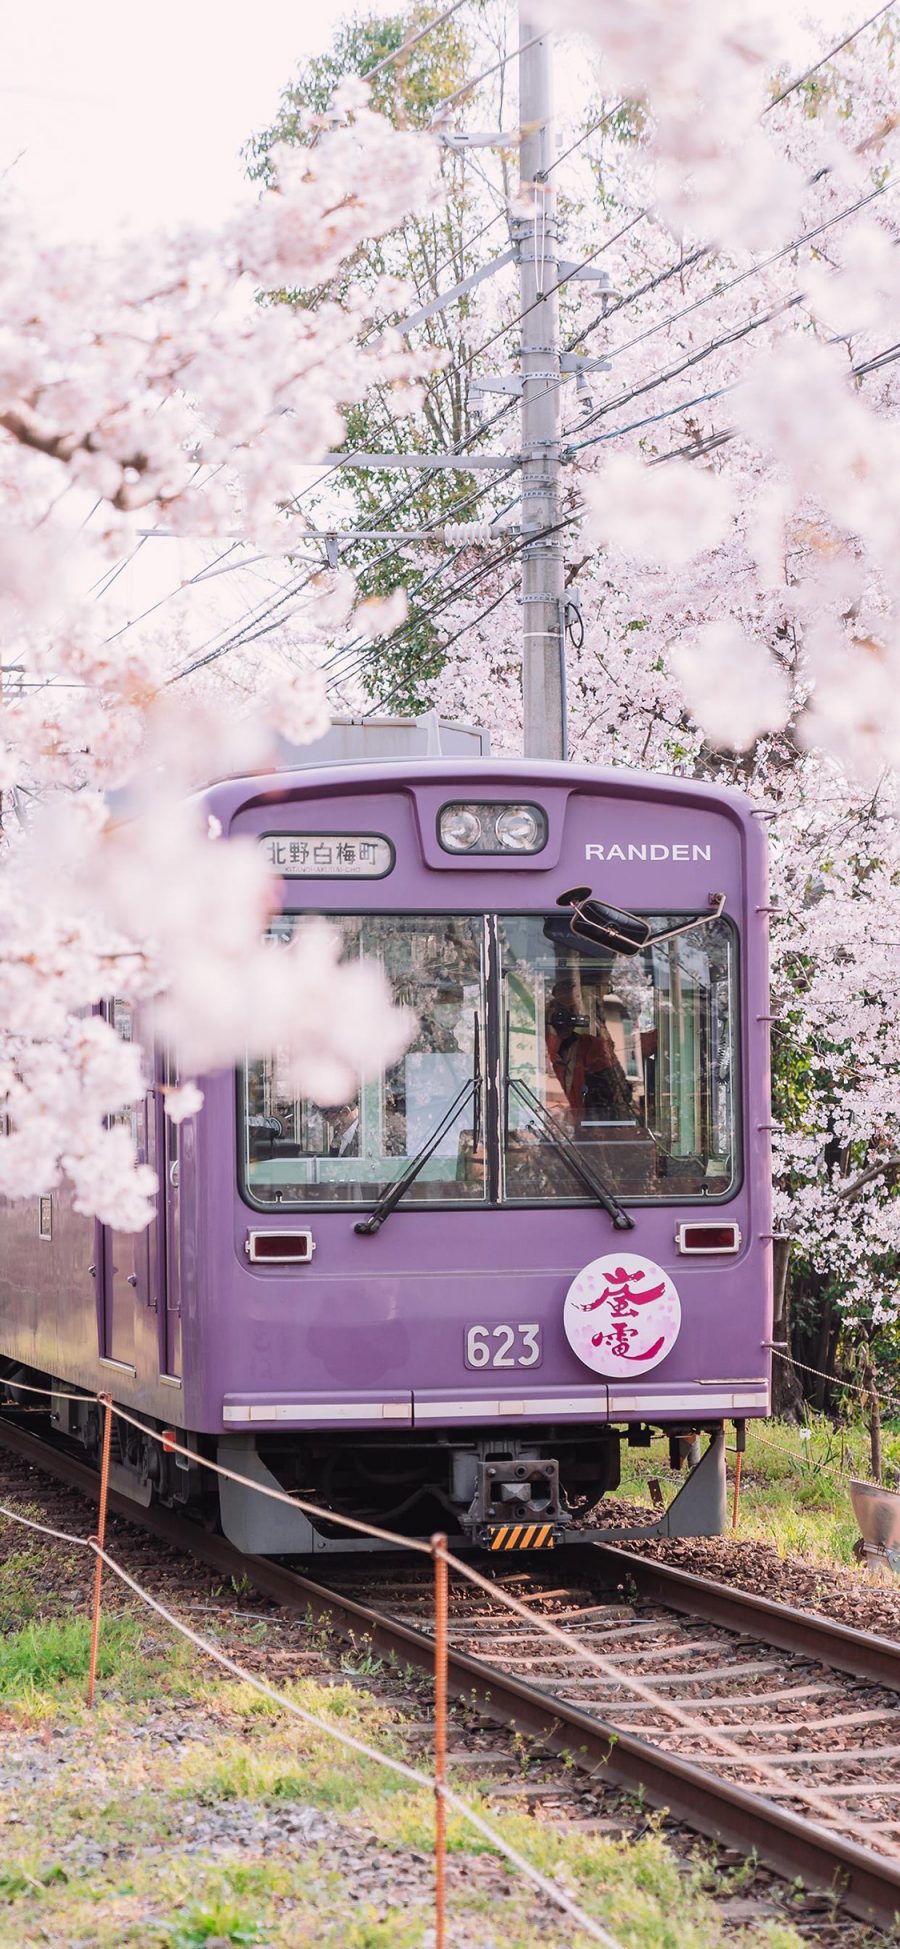 [2436×1125]火车 樱花 日本 列车 行驶 春天 苹果手机壁纸图片